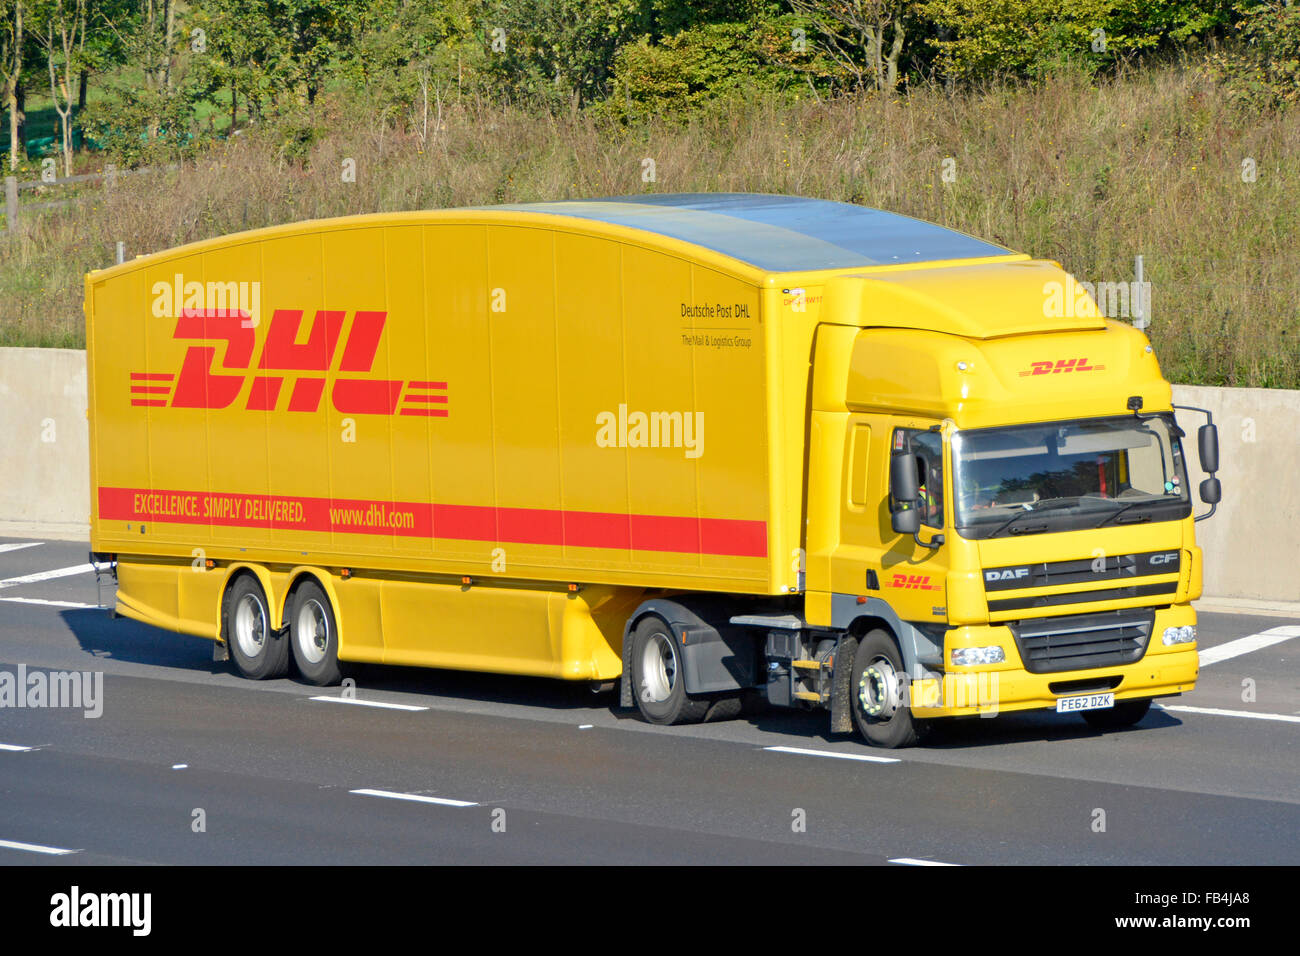 Vue latérale et avant carrosserie profilée hgv Deutsche Post DHL camion et chauffeur avec logo sur la remorque conduisant l'autoroute Angleterre Royaume-Uni Banque D'Images